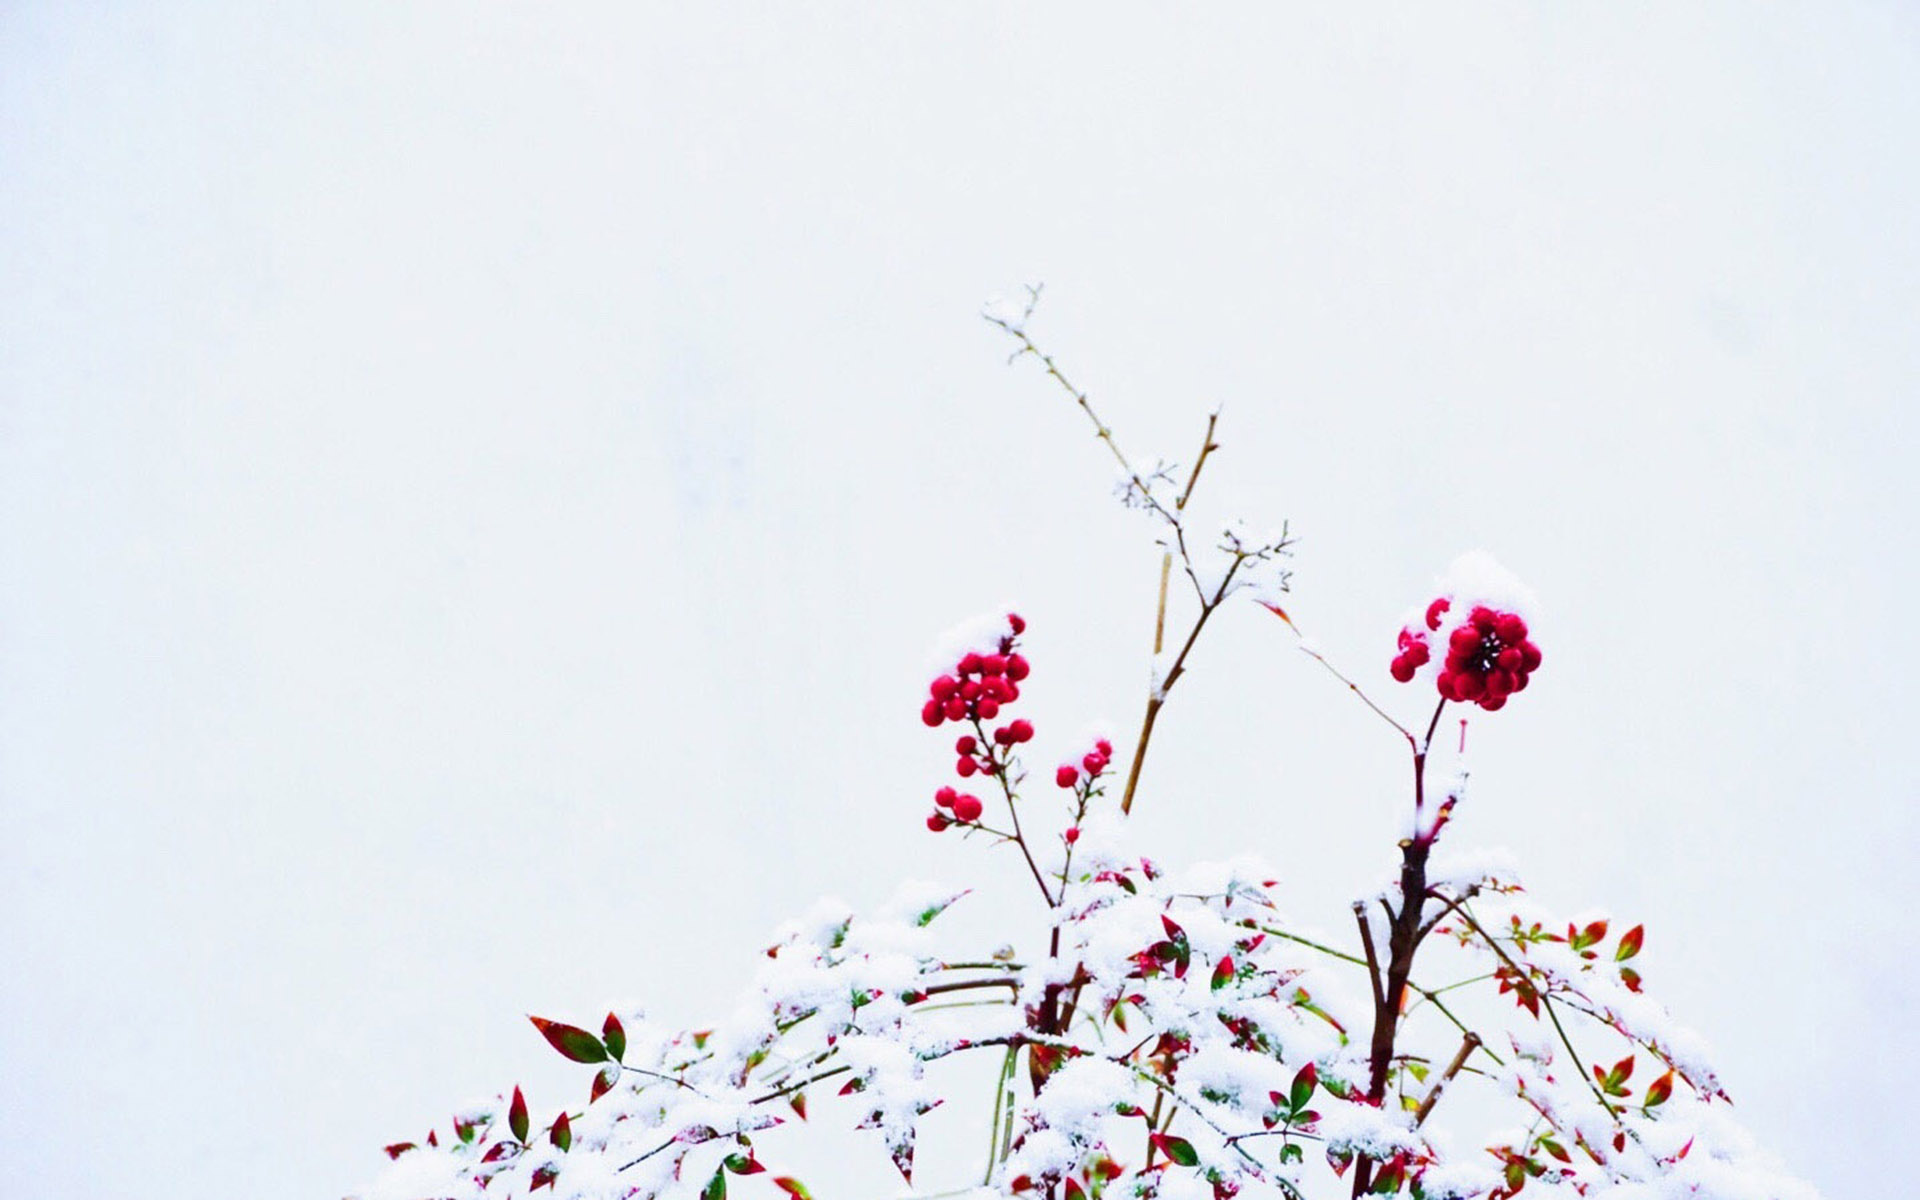 冬天雪景图片大全 冬日雪中植物唯美摄影图片(6)